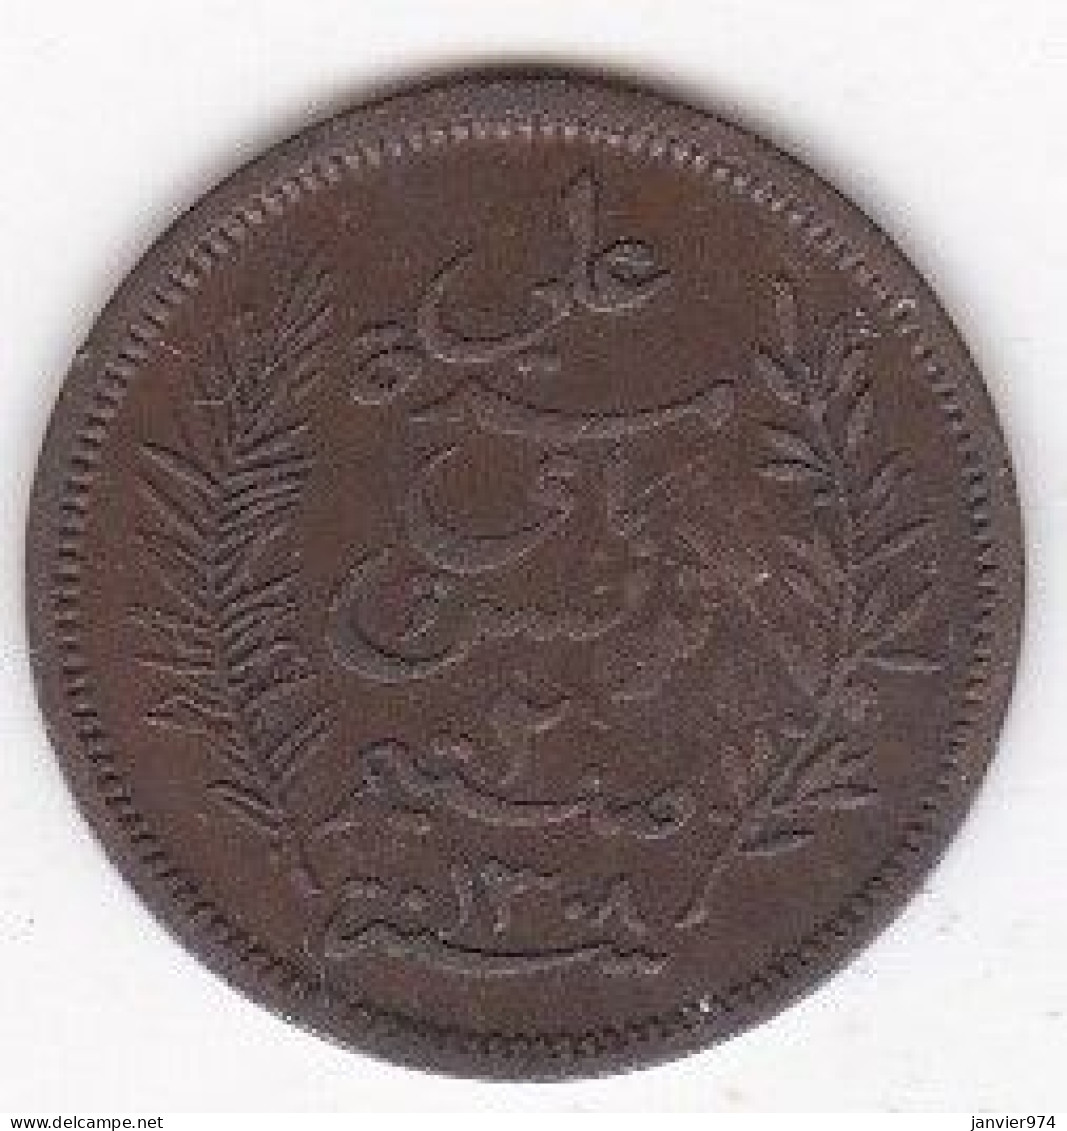 Protectorat Français Tunisie 2 Centimes 1891 A , En Bronze, Lec# 70 - Tunesien